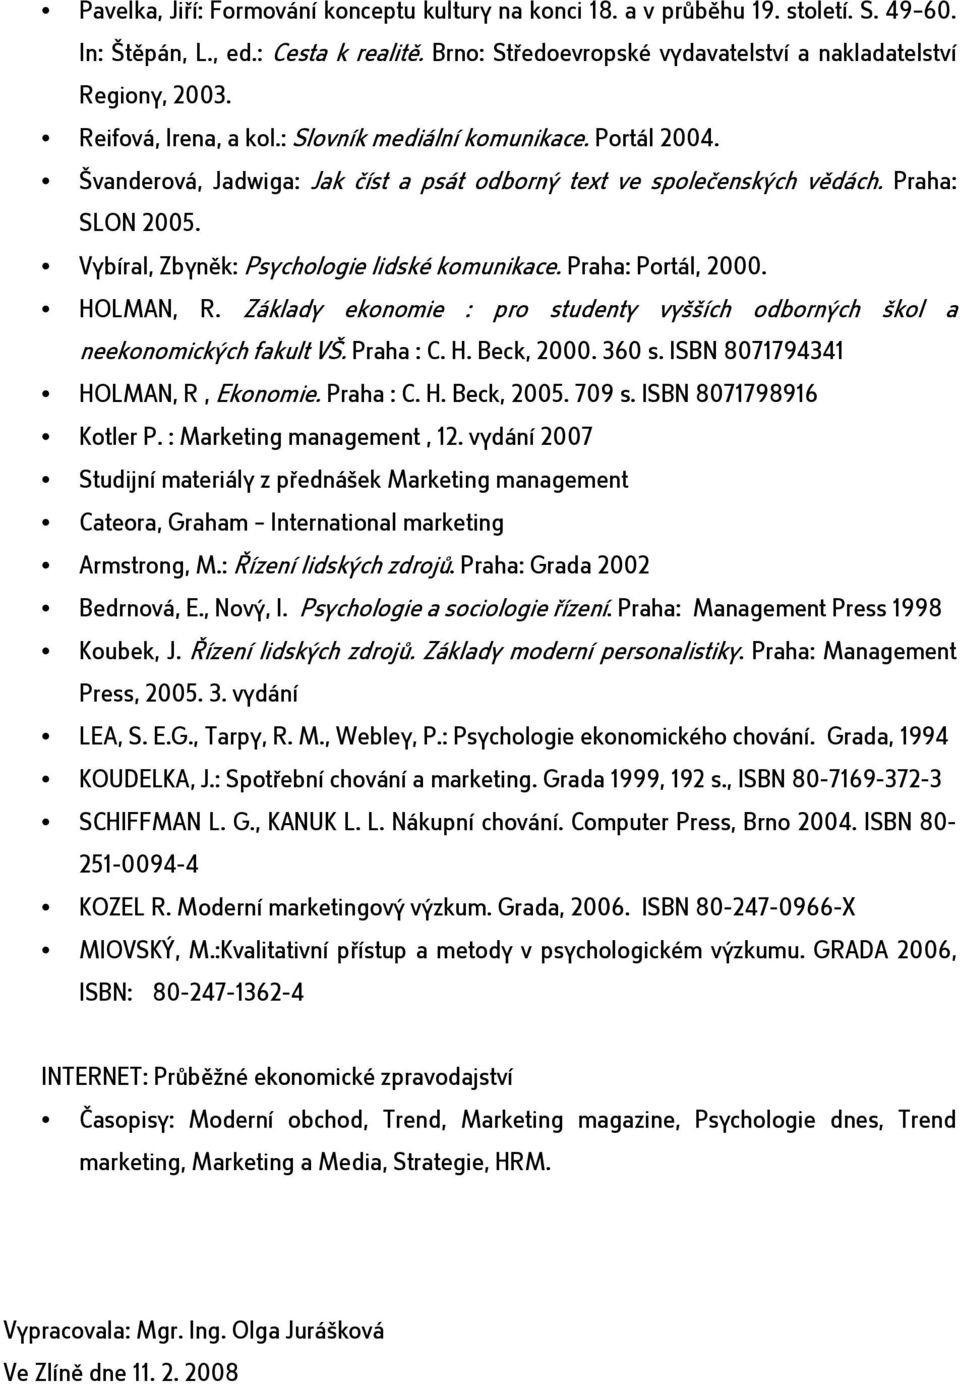 Vybíral, Zbyněk: Psychologie lidské komunikace. Praha: Portál, 2000. HOLMAN, R. Základy ekonomie : pro studenty vyšších odborných škol a neekonomických fakult VŠ. Praha : C. H. Beck, 2000. 360 s.